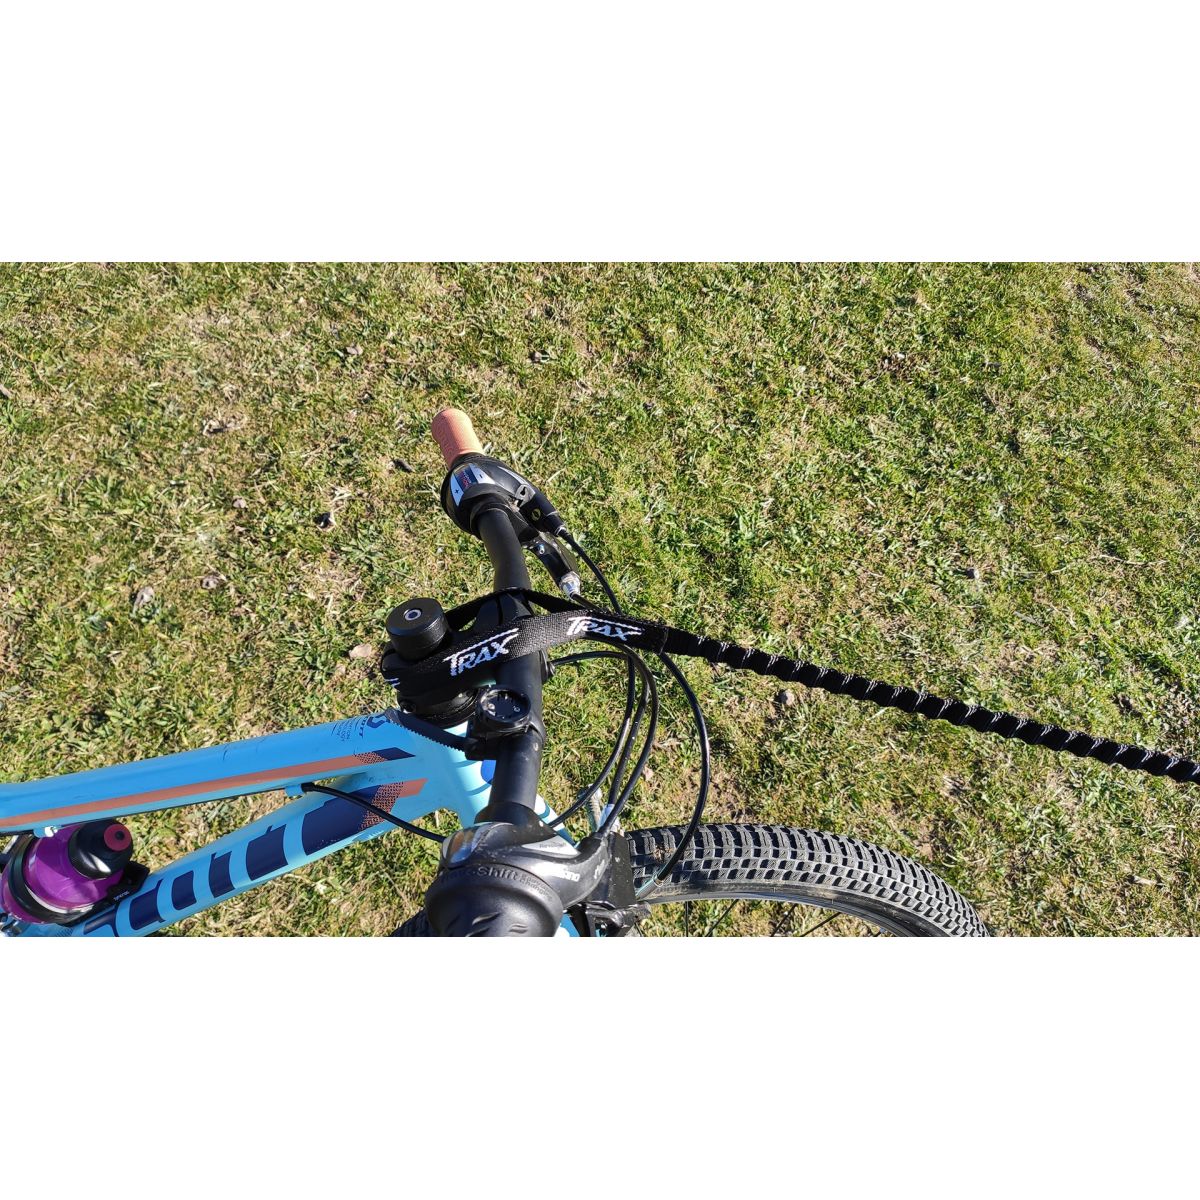 Remolcador de bicicletas Trax Flex para manillar